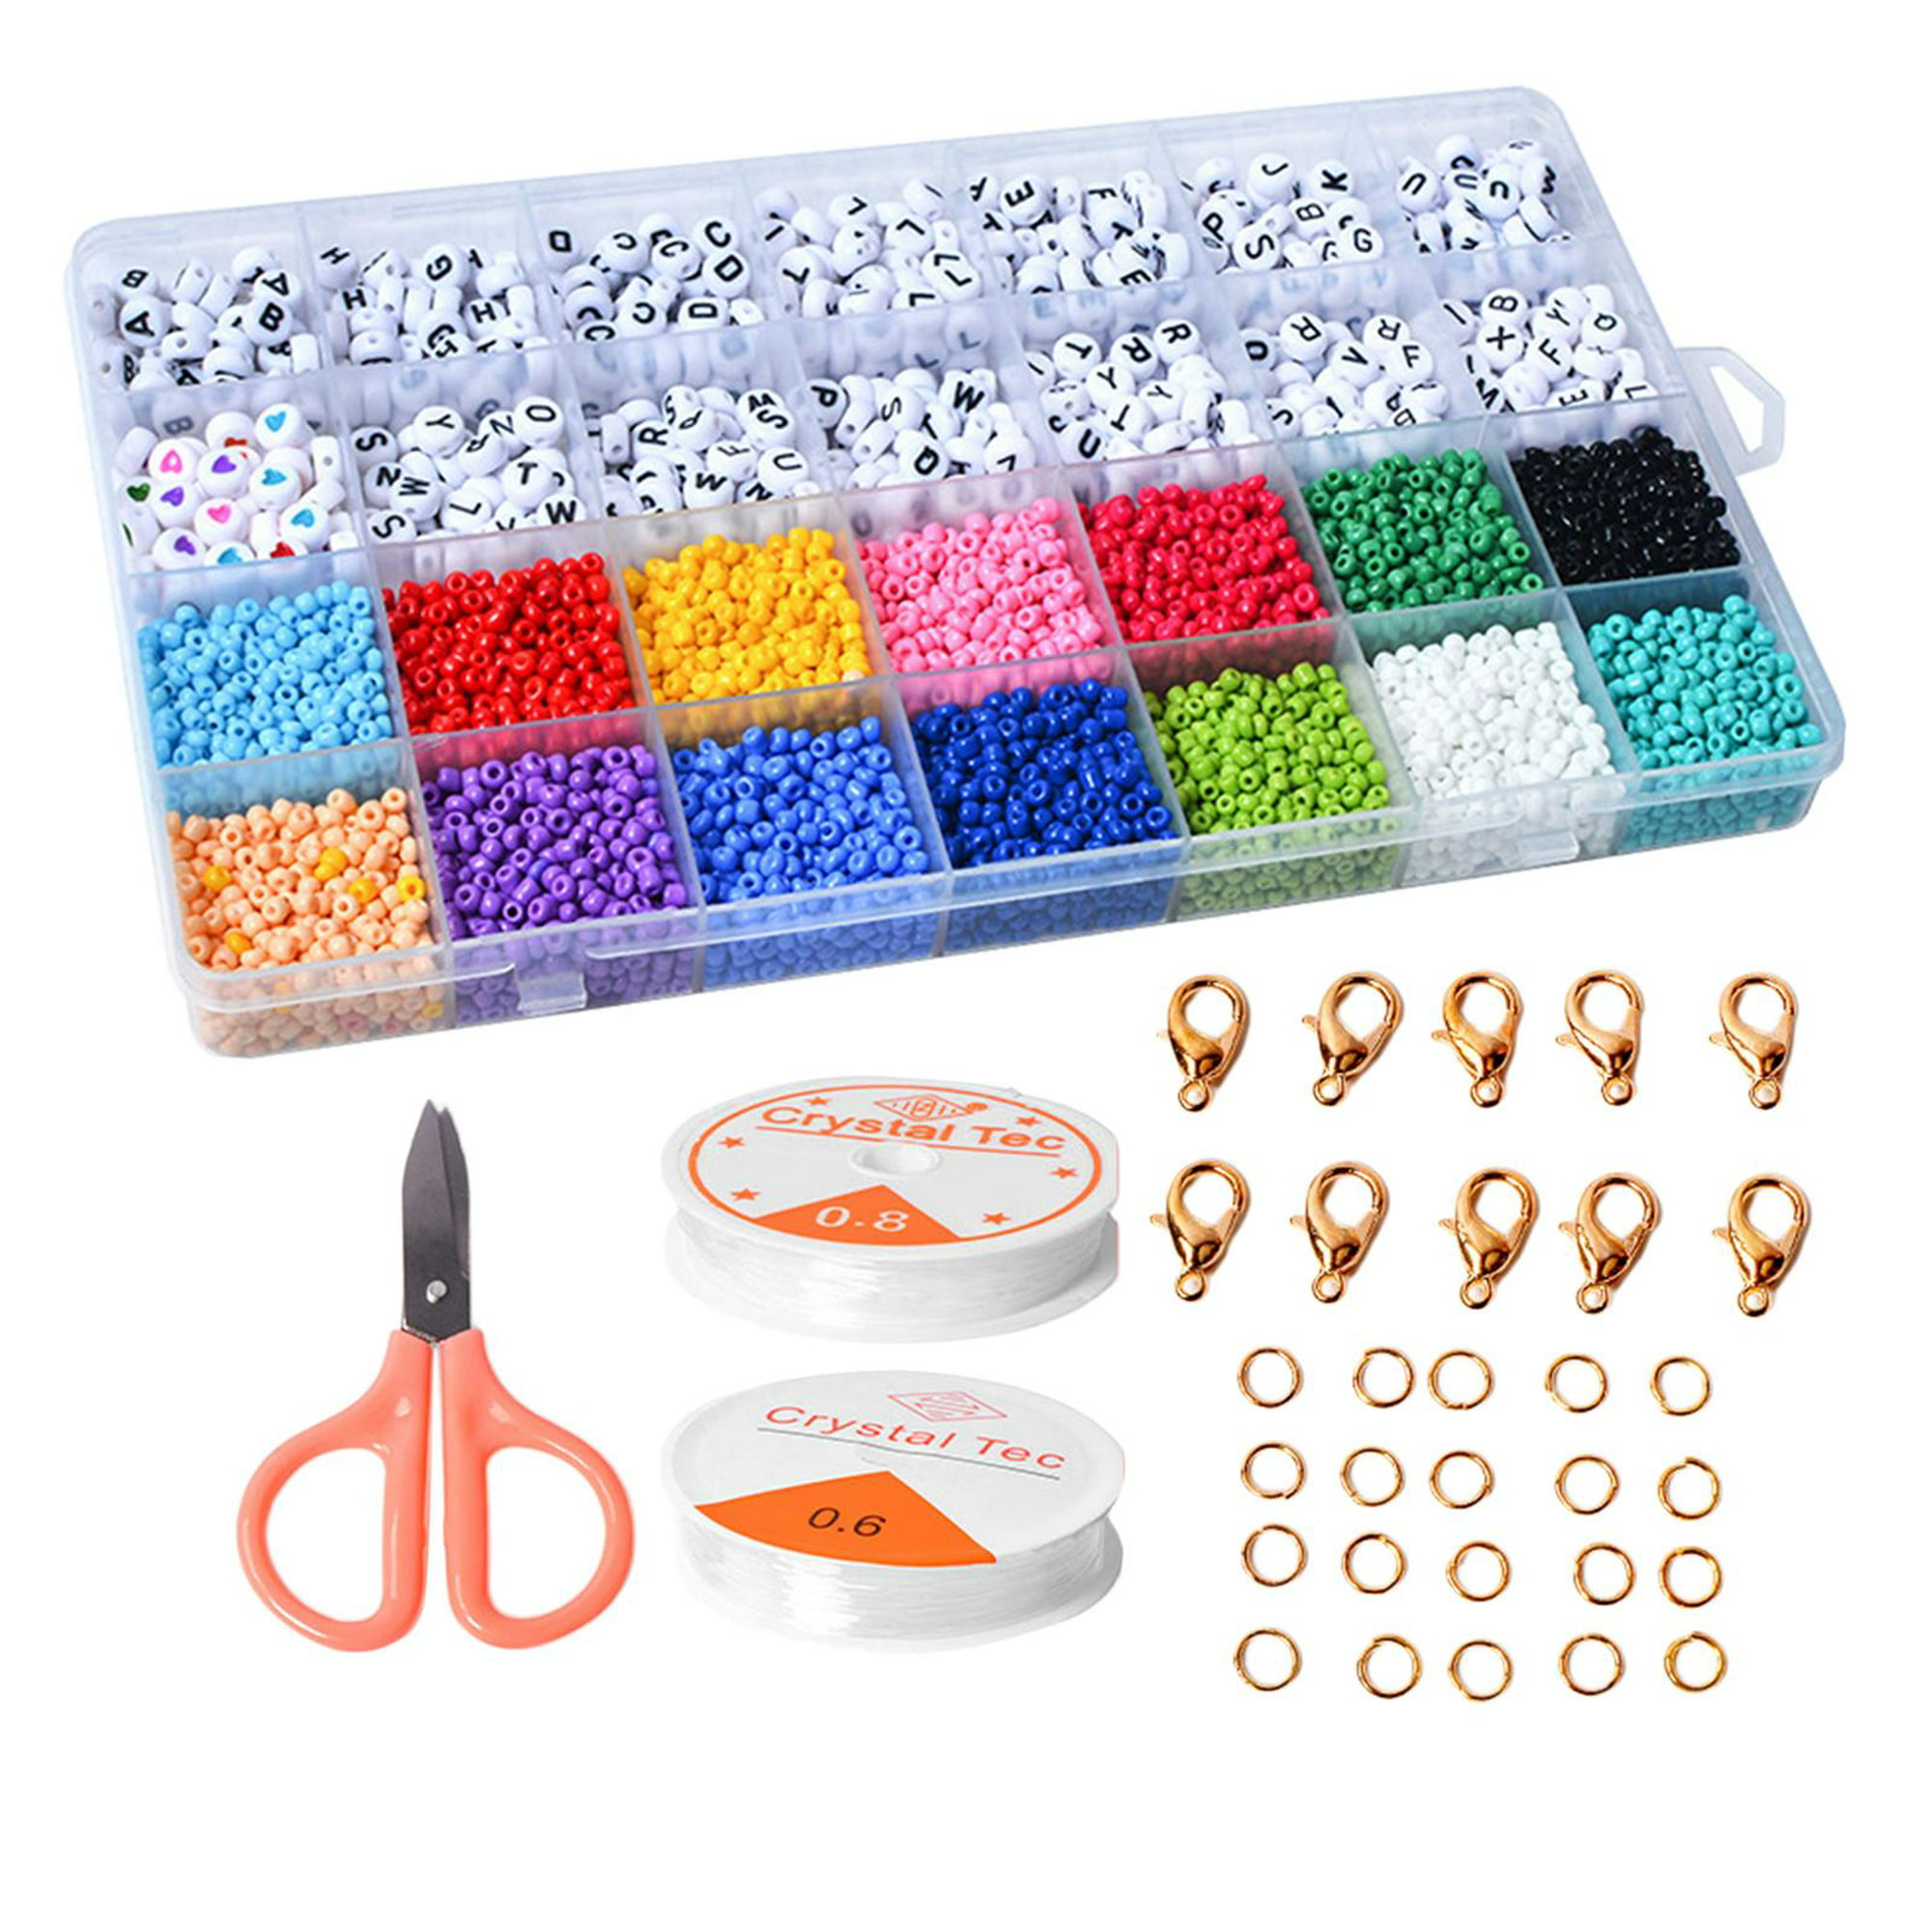 Kit de suministros para hacer joyas, kit de fabricación de joyas con  herramientas de joyería, herramientas de calibración de anillos, cuentas de